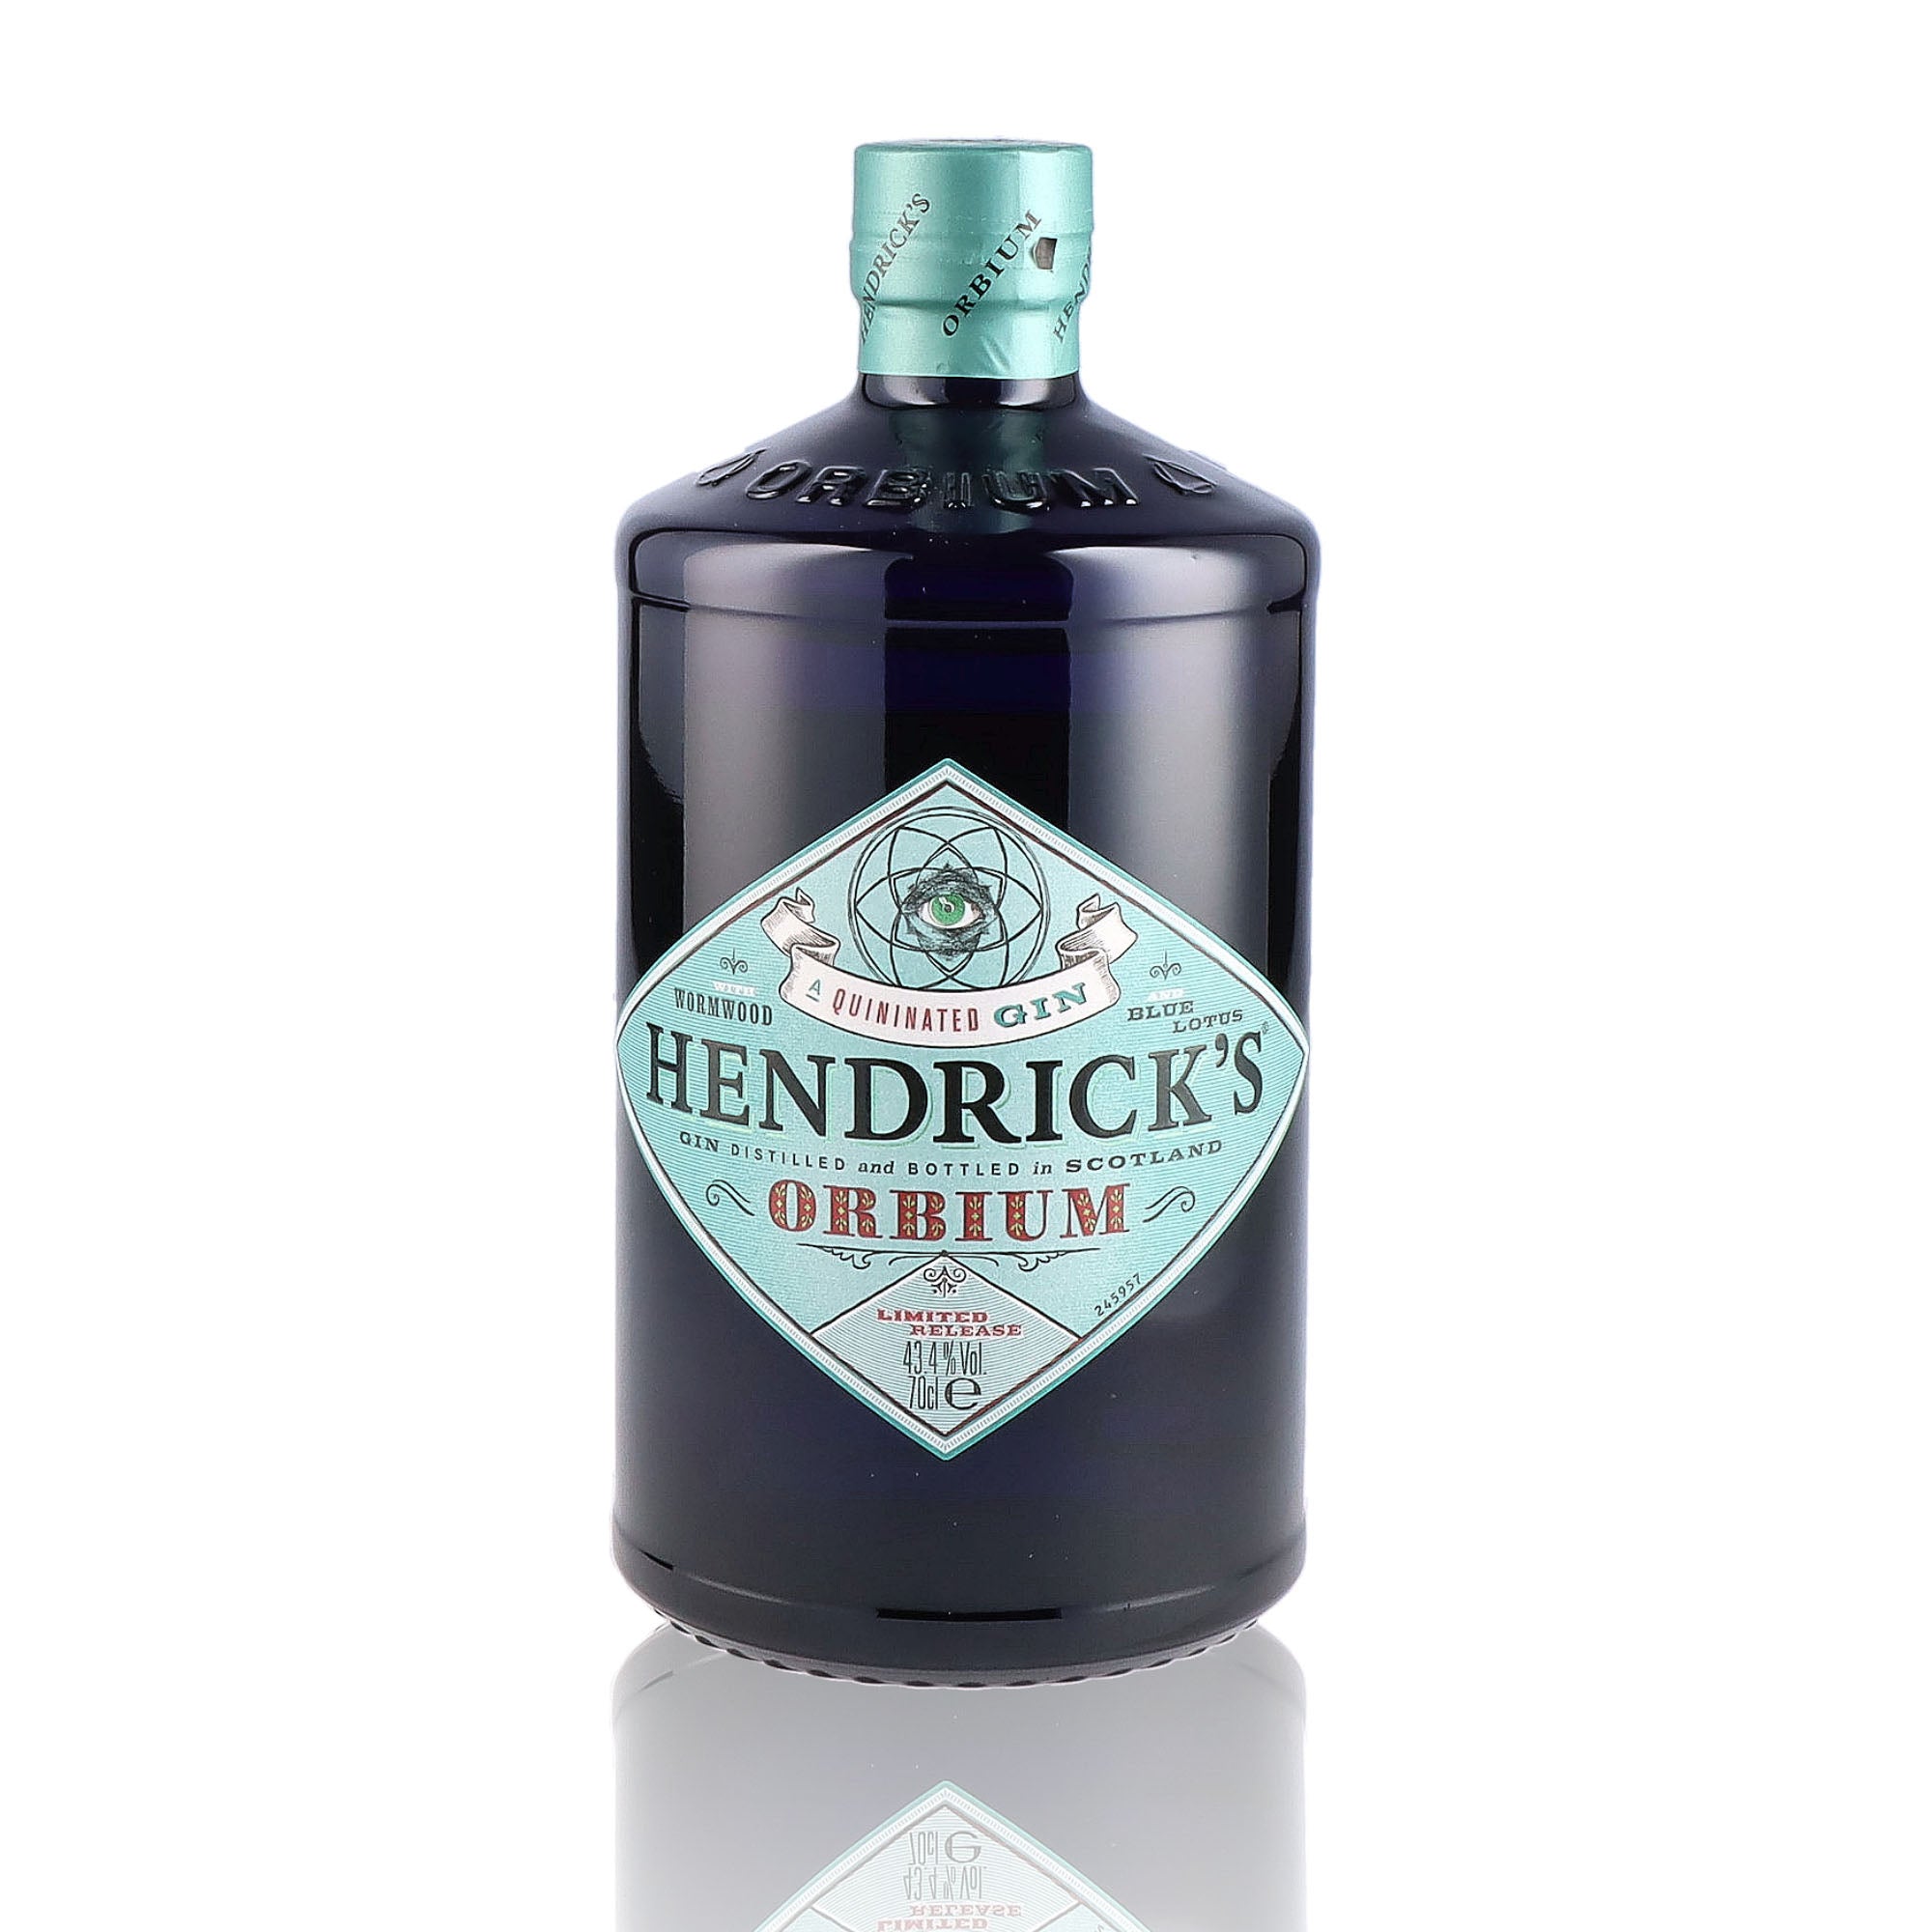 Une bouteille de Gin, de la marque Hendrick's, nommée Orbium.